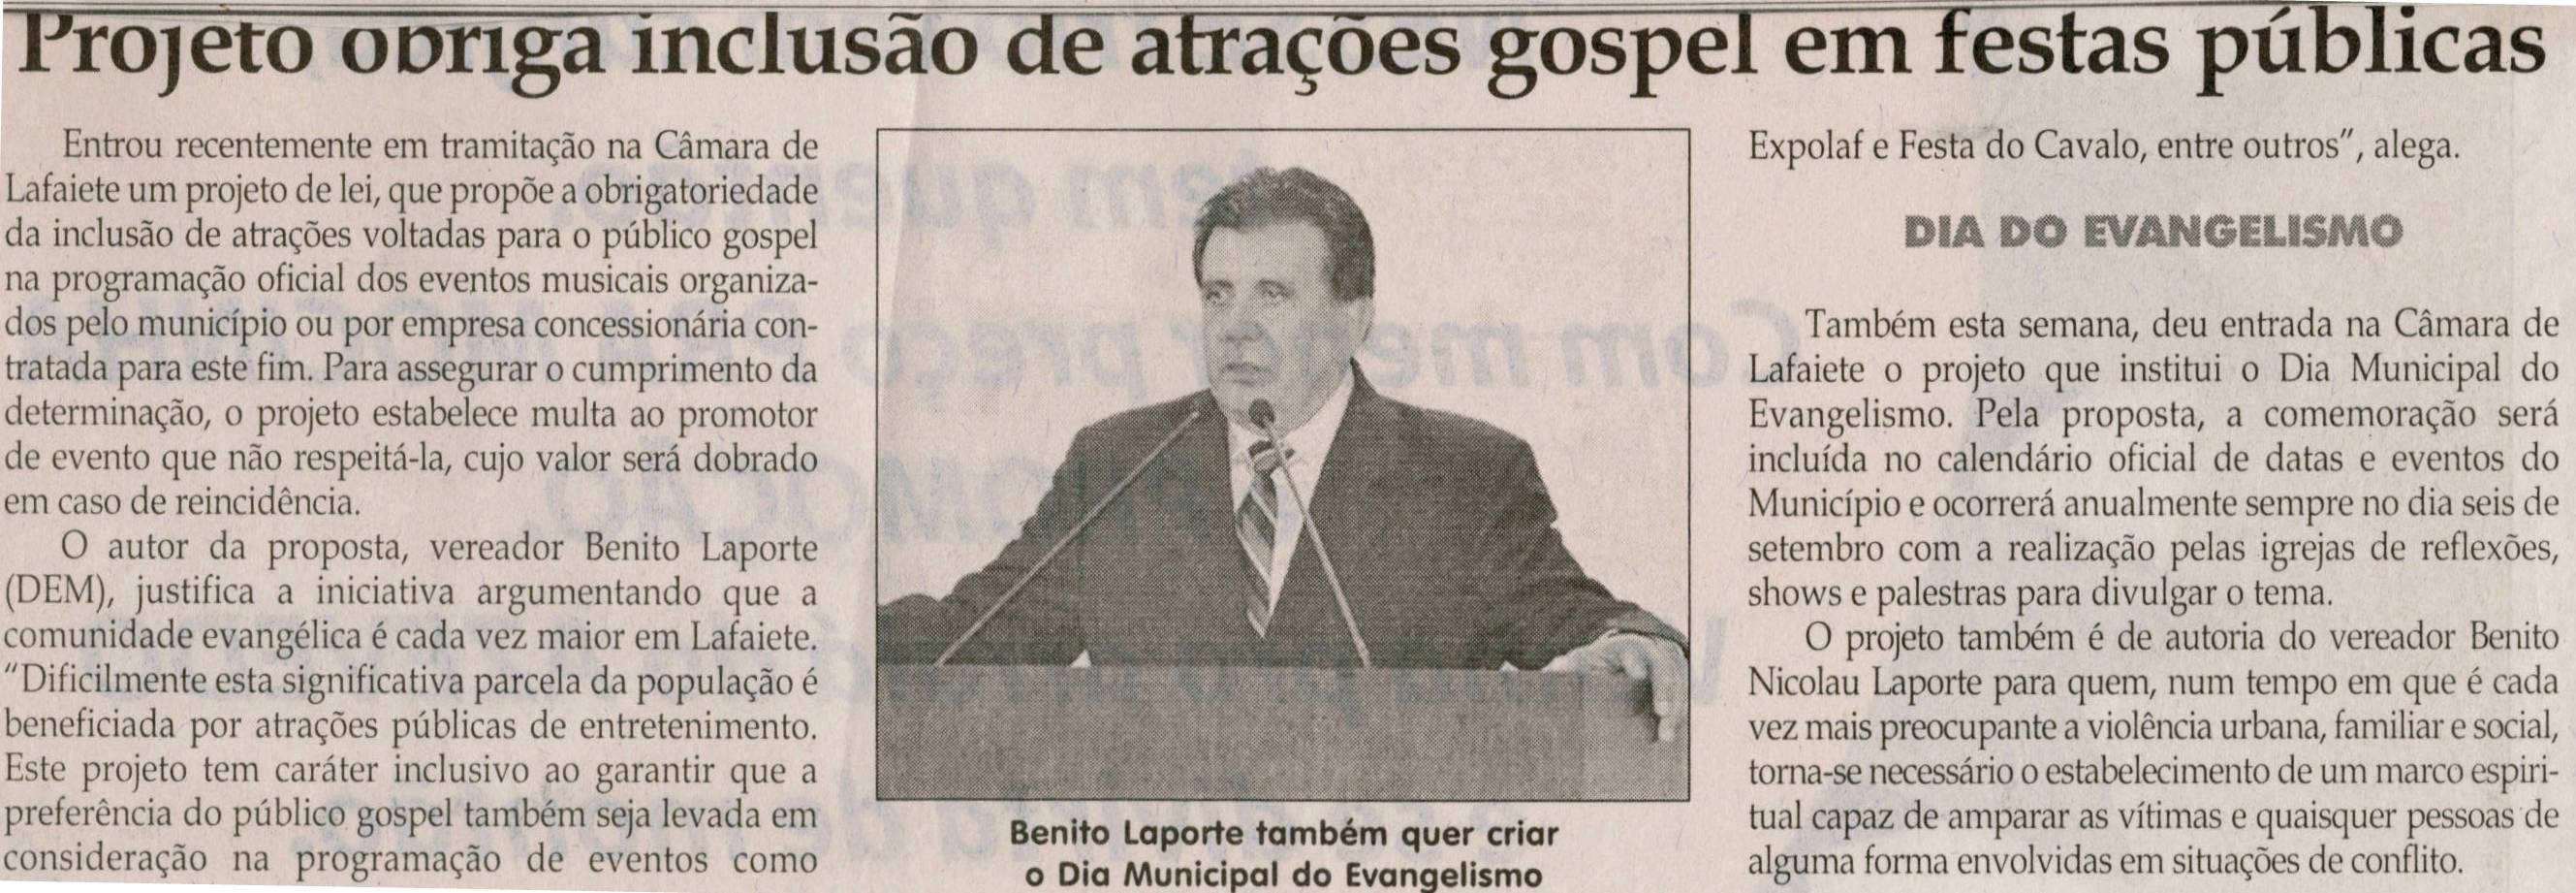 Projeto obriga inclusão de atrações gospel em festas públicas. Jornal Correio da Cidade, Conselheiro Lafaiete, 29 jun. 2013, p. 05.